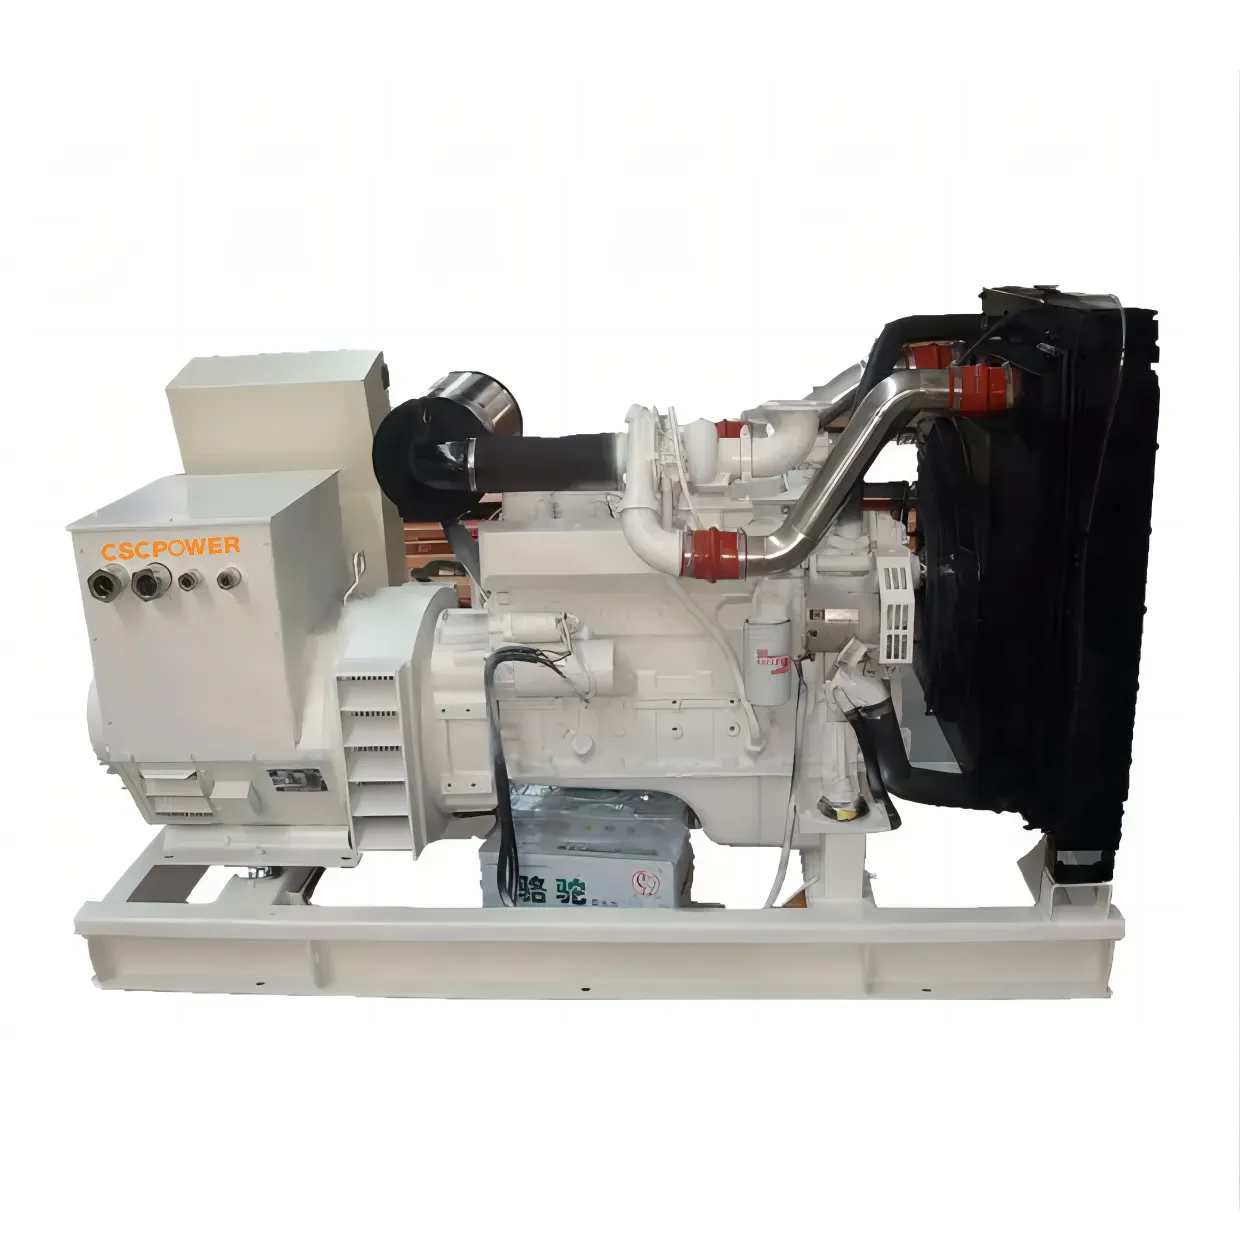 Deniz dizel jeneratör 30Kva deniz suyu ile motor tarafından desteklenmektedir düşük fiyat maliyet etkin sıcak satış